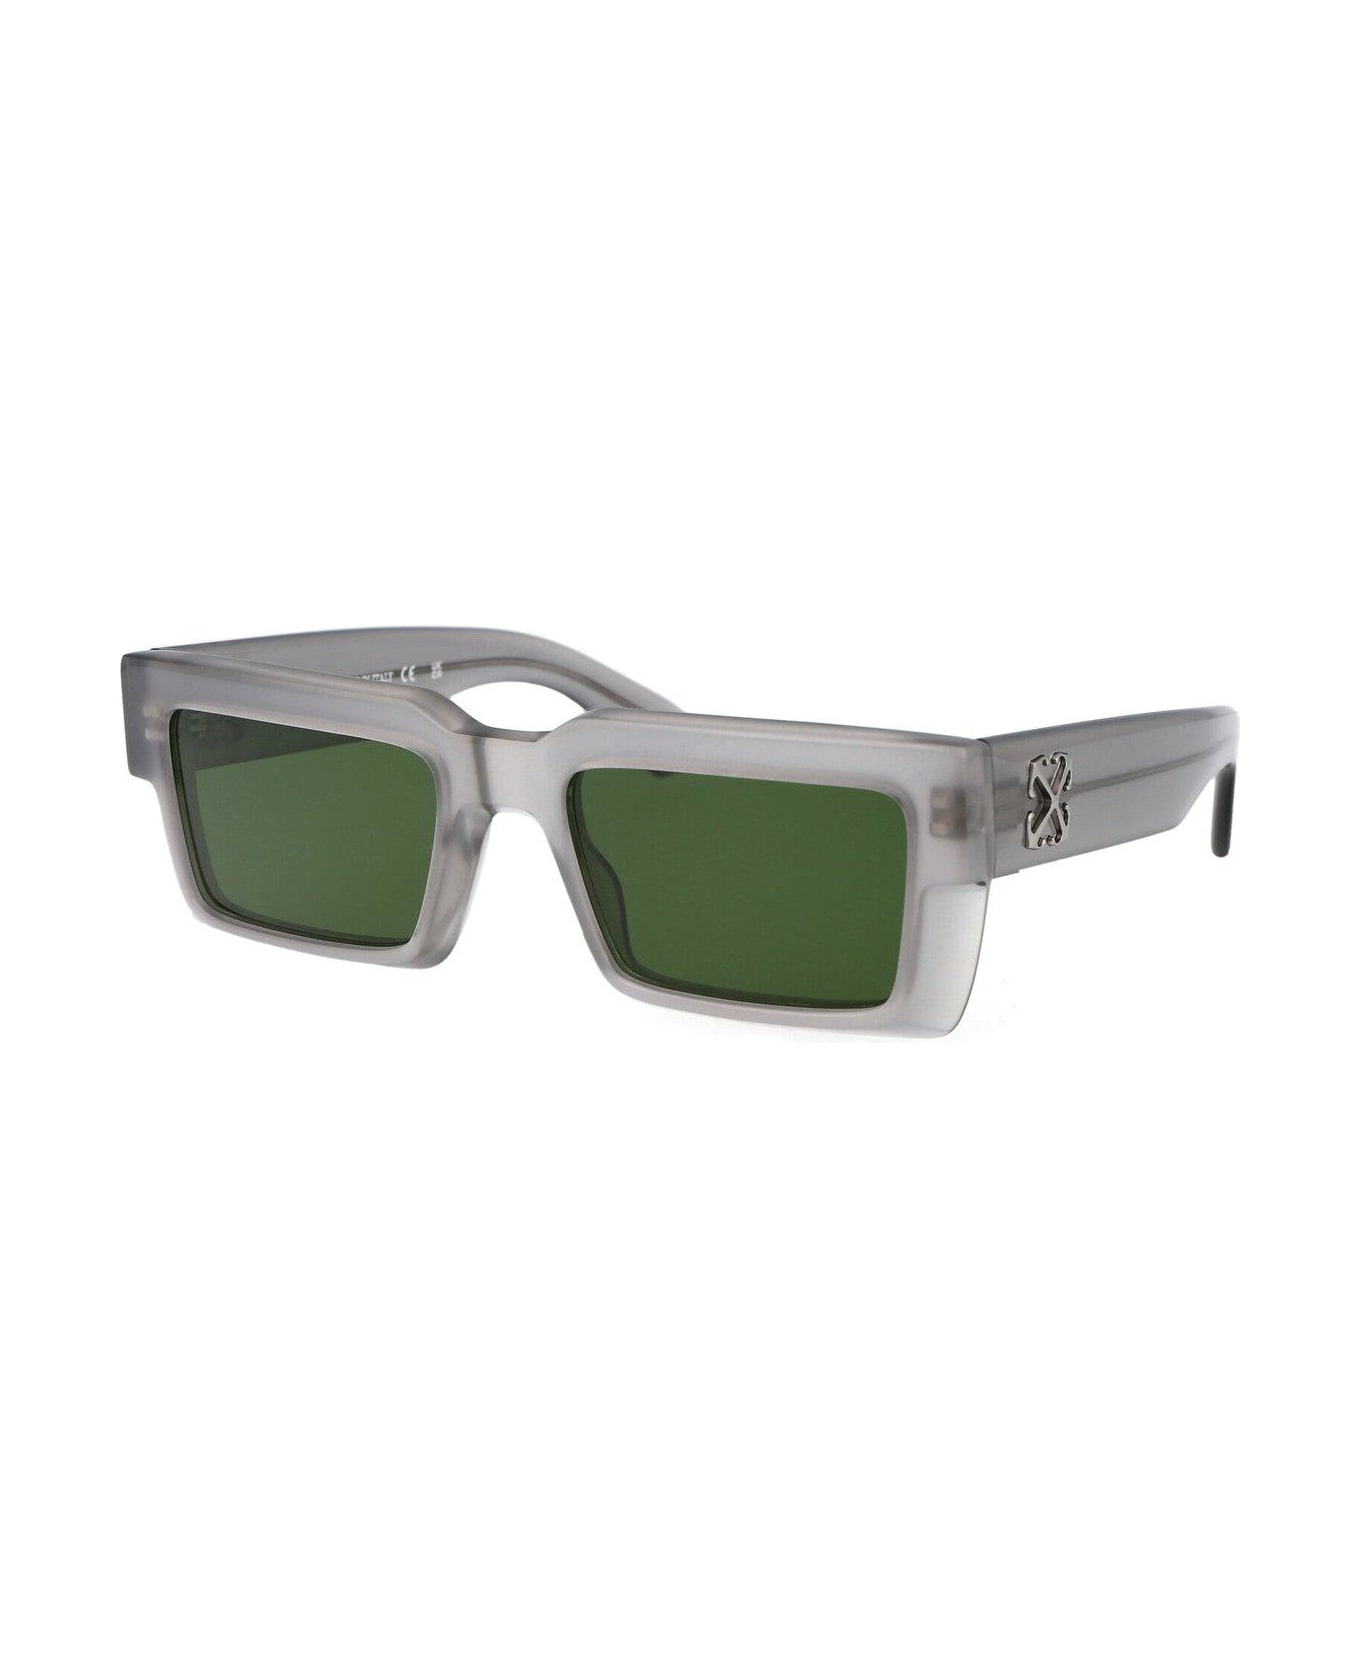 Off-White Rectangular Frame Sunglasses - Grigio e Verde